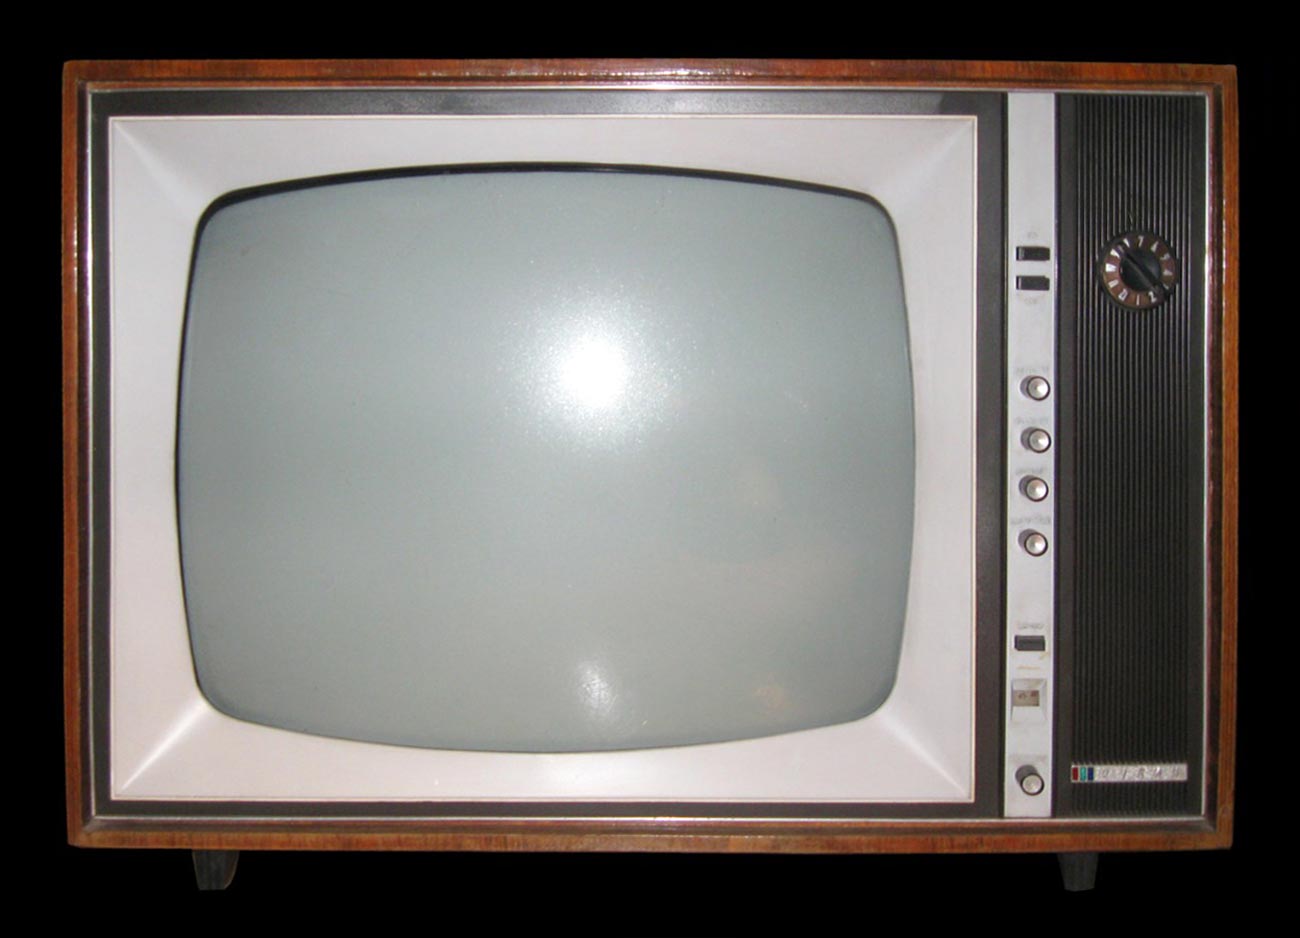 Bda Tv Monitor Uninstall